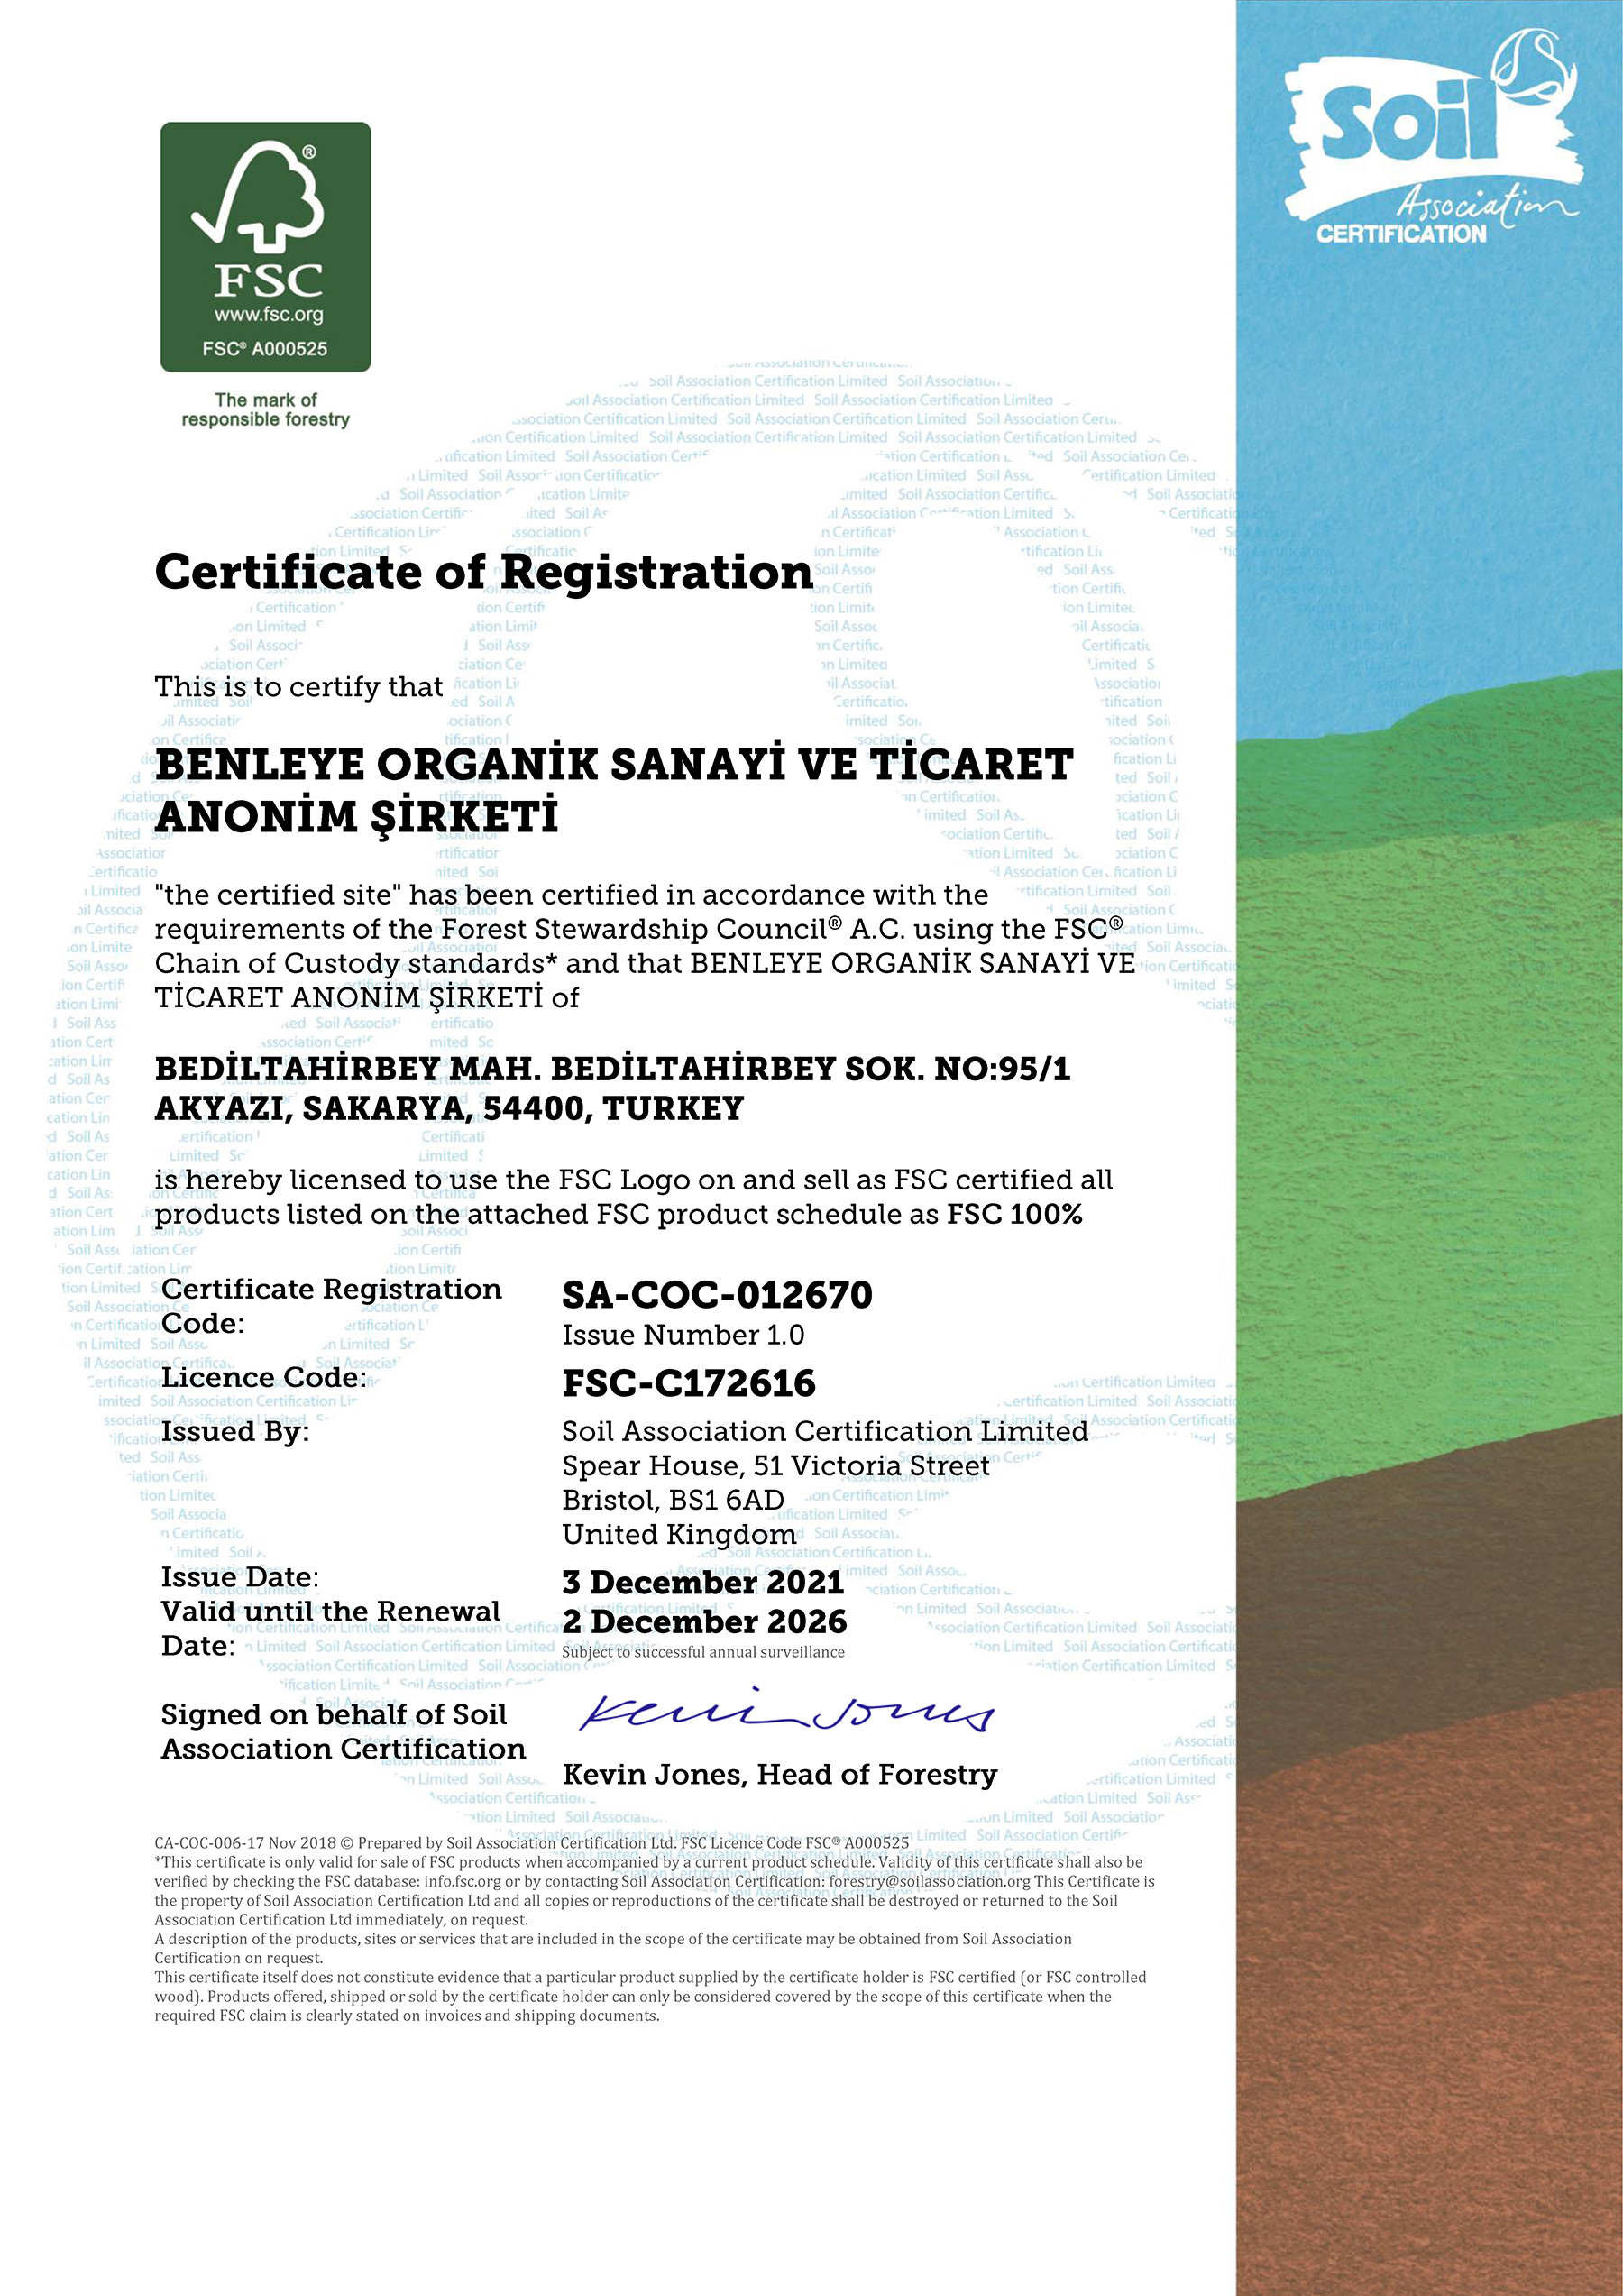 Benleye FSC Certificate - 2